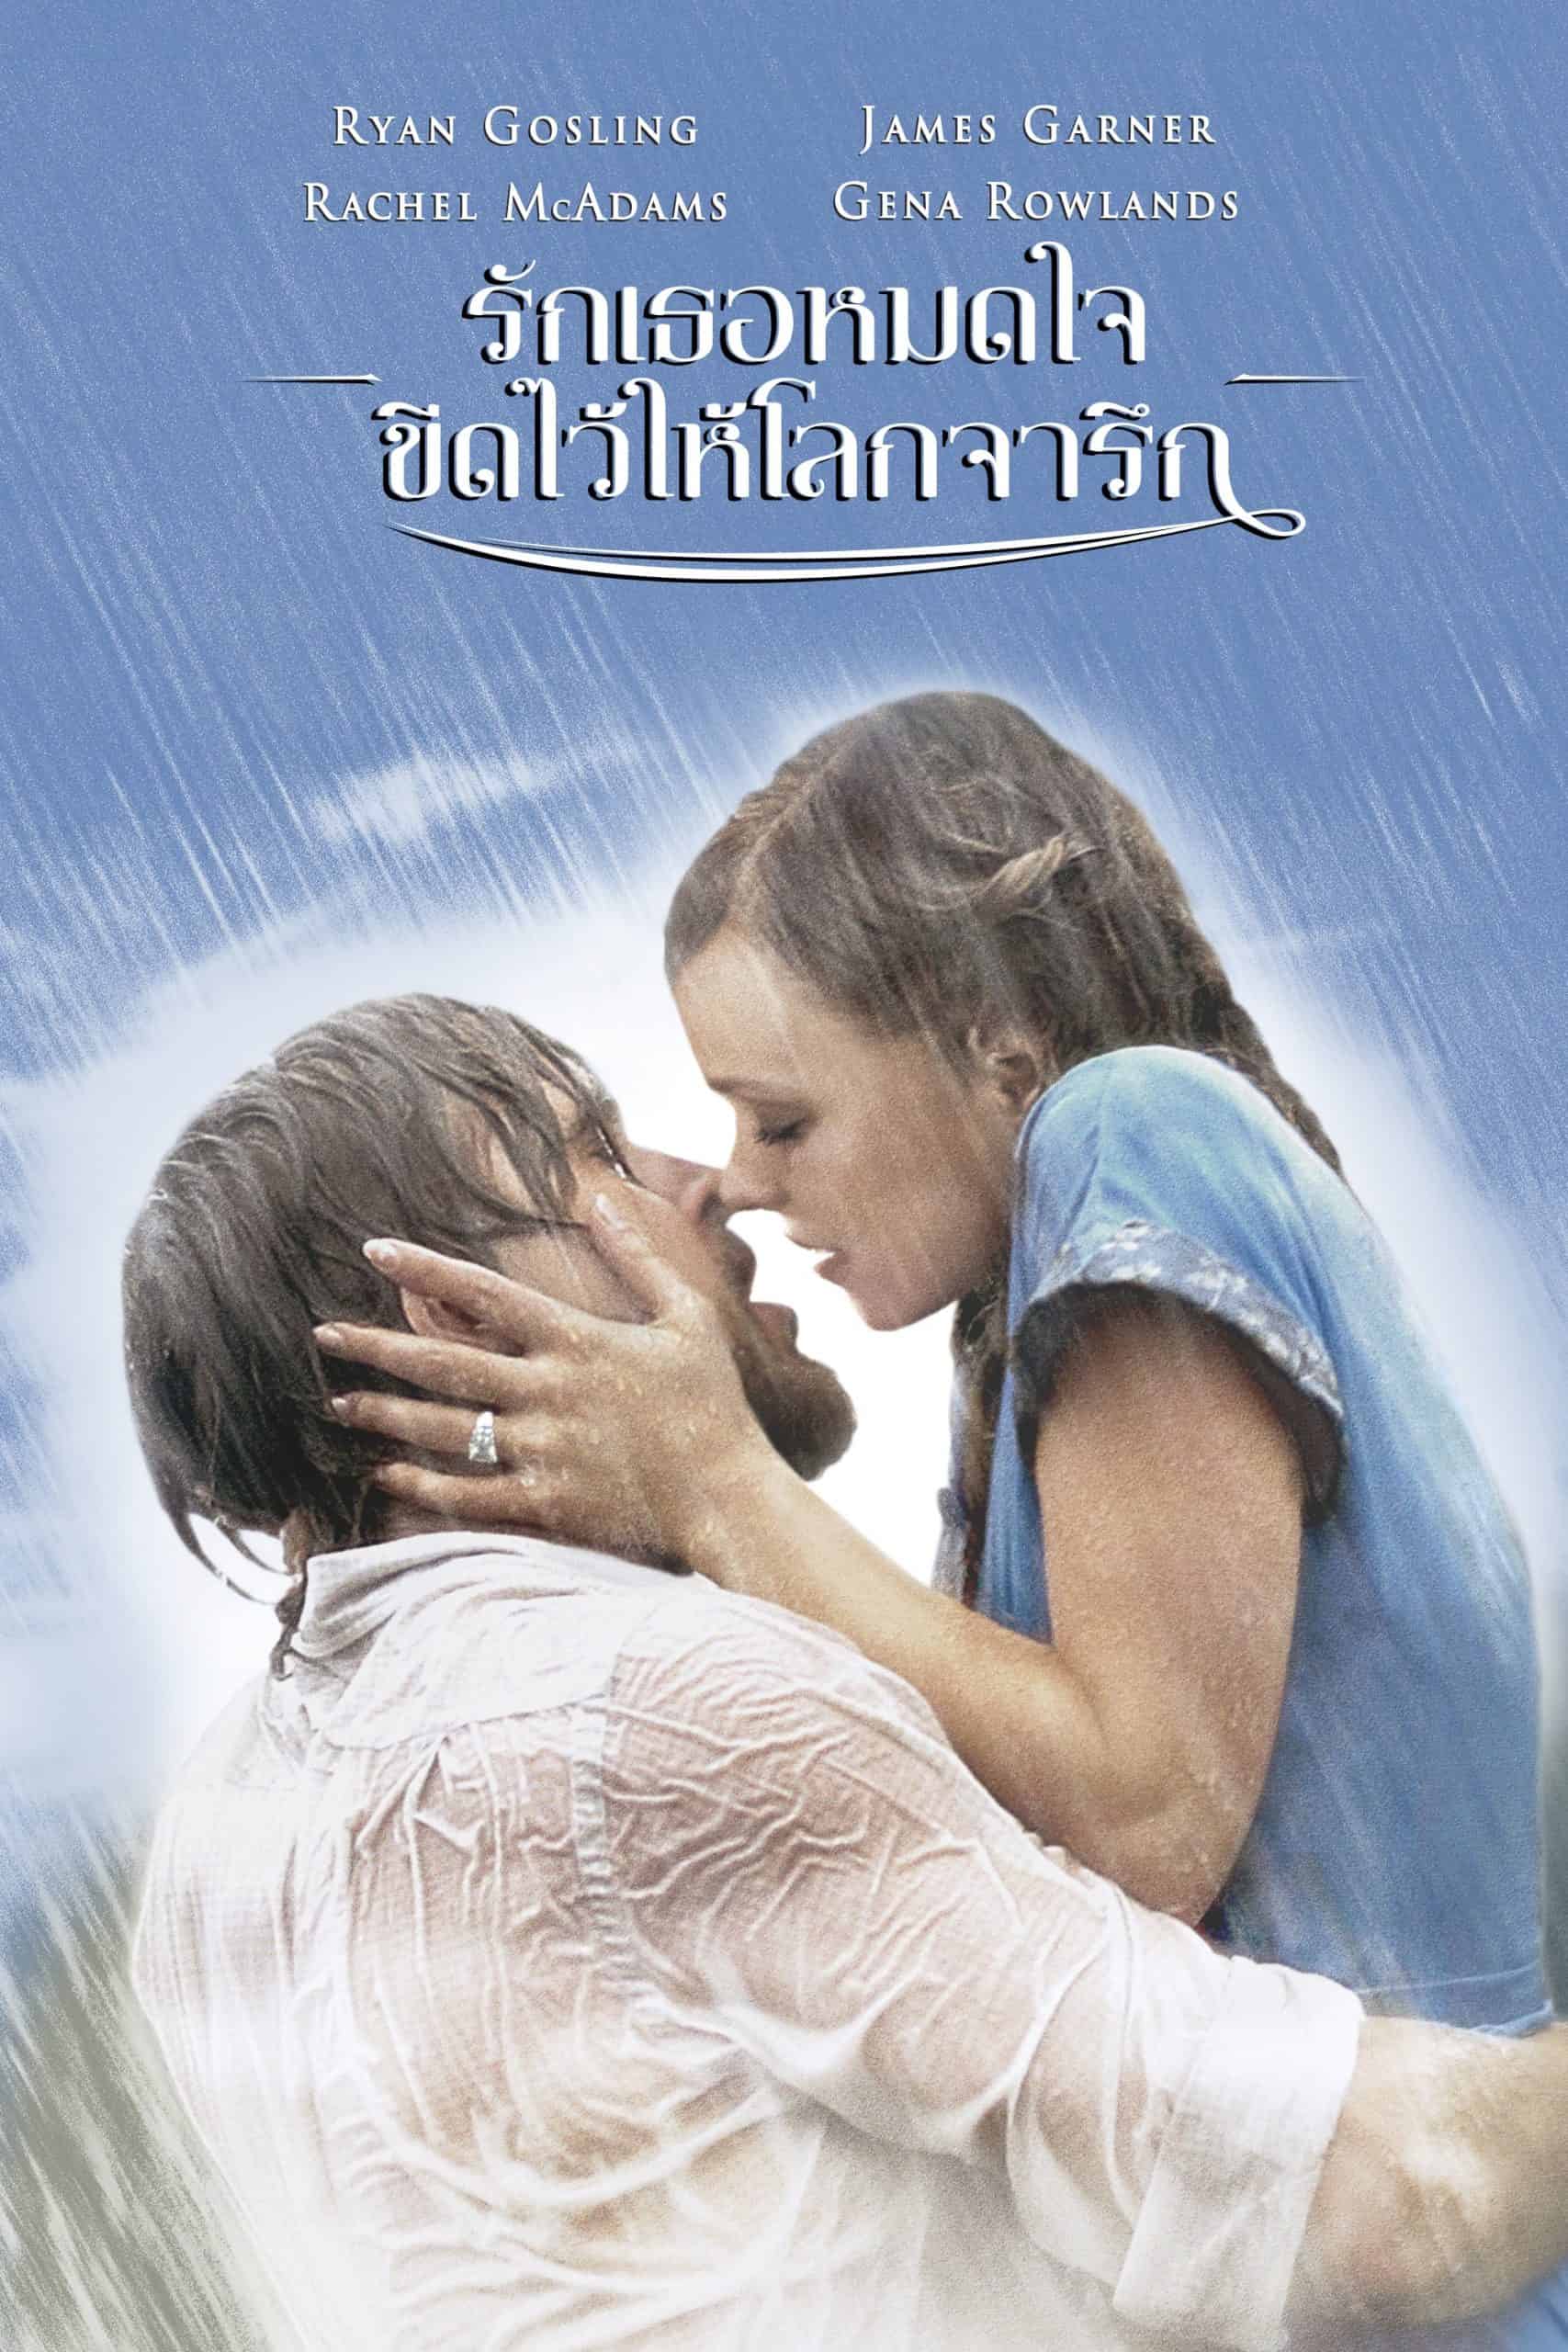 The Notebook (2004) รักเธอหมดใจ ขีดไว้ให้โลกจารึก